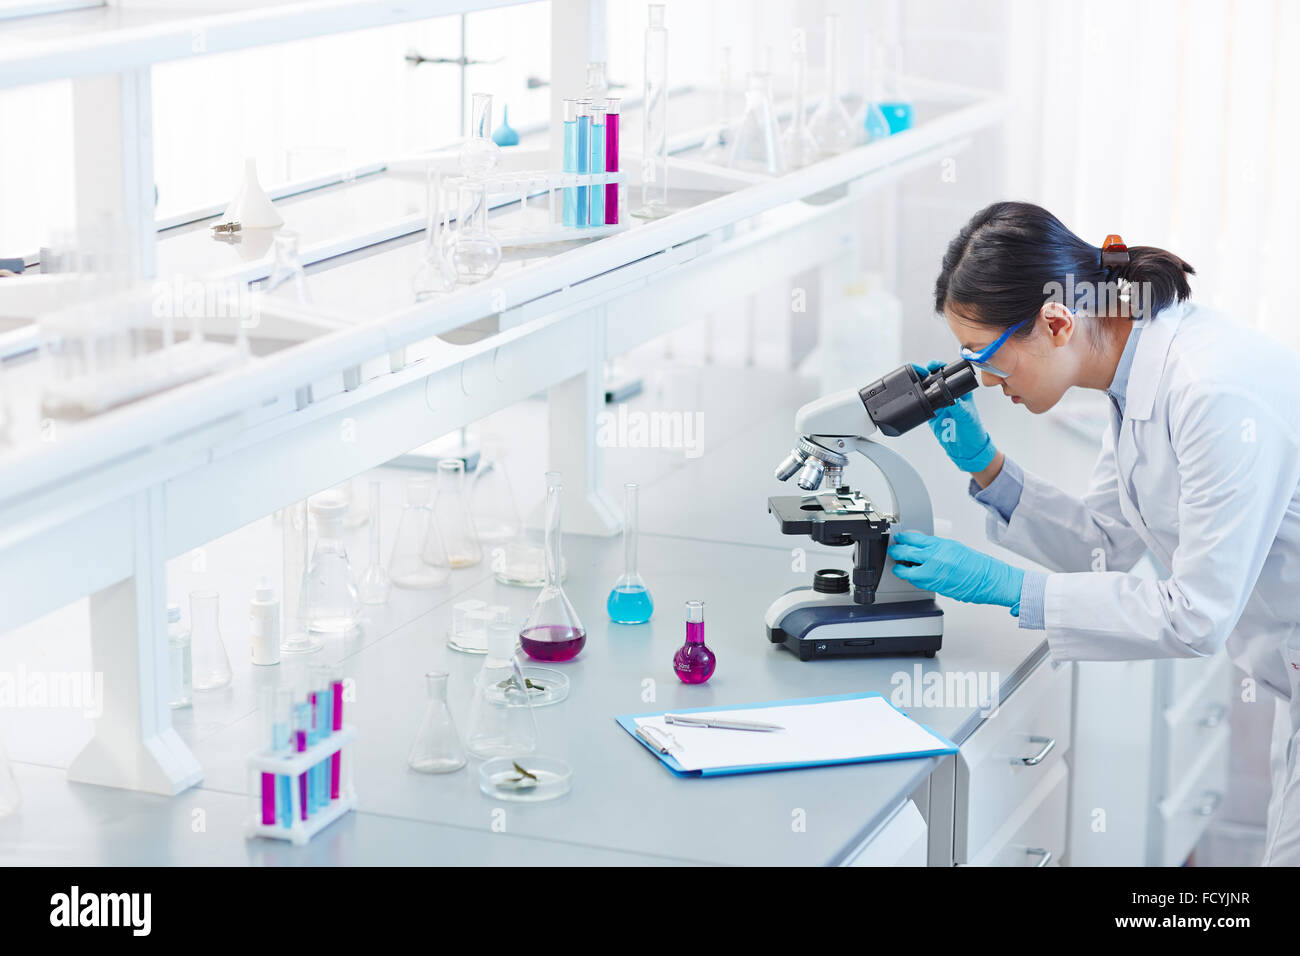 Cristalería, microscopio y portapapeles en laboratorio científico Foto de stock